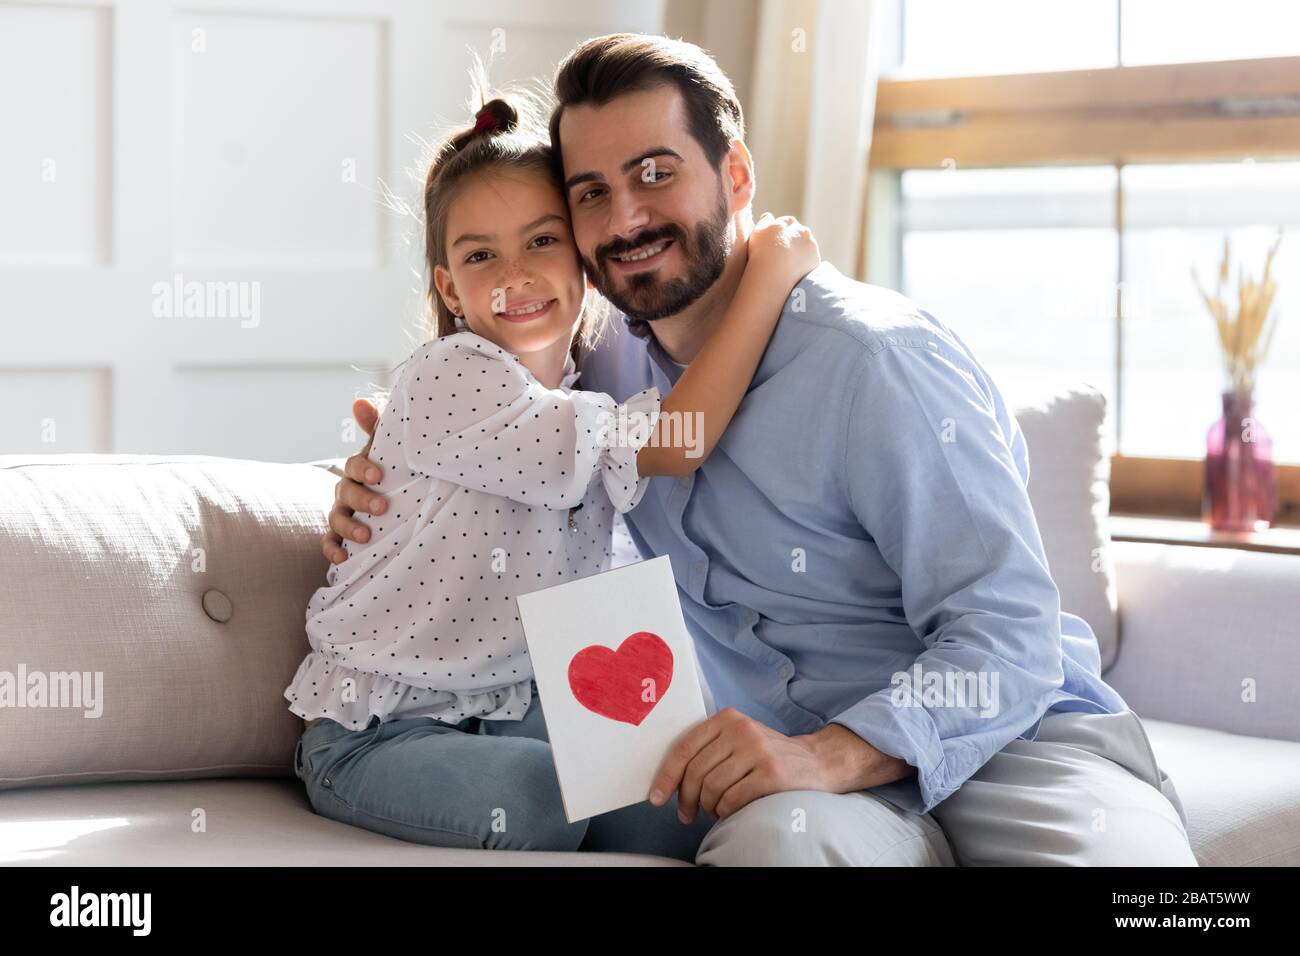 Portrait des süßen kleinen Mädchens, das lächelnden Vater umarmte, Glückwunsch zum Geburtstag. Stockfoto